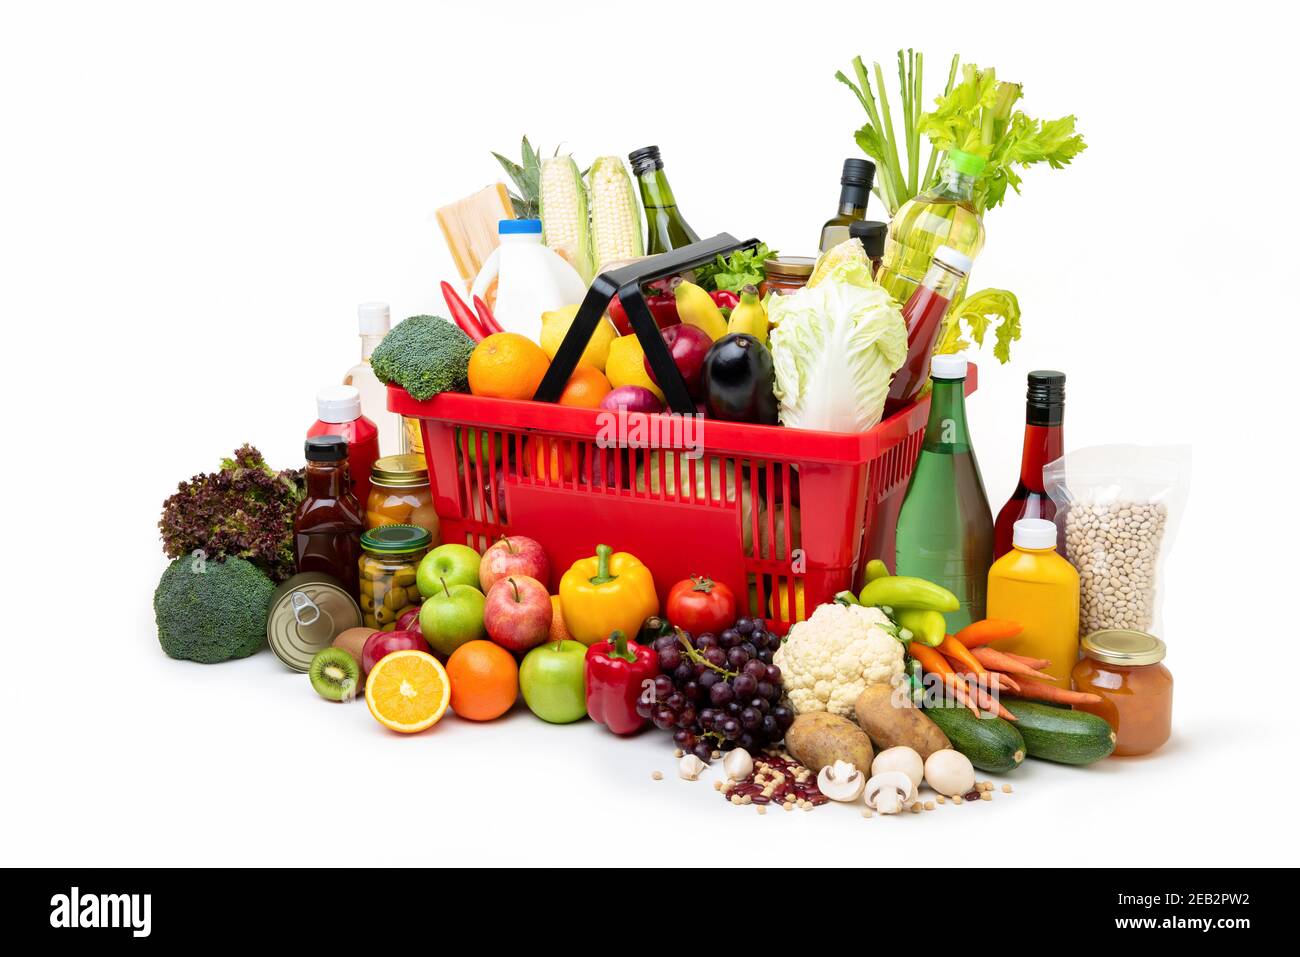 Roter Supermarkt-Einkaufskorb voll mit frischen Bio-bunten Lebensmitteln Und Lebensmittel mit verschiedenen Zutaten auf weißem Hintergrund Stockfoto